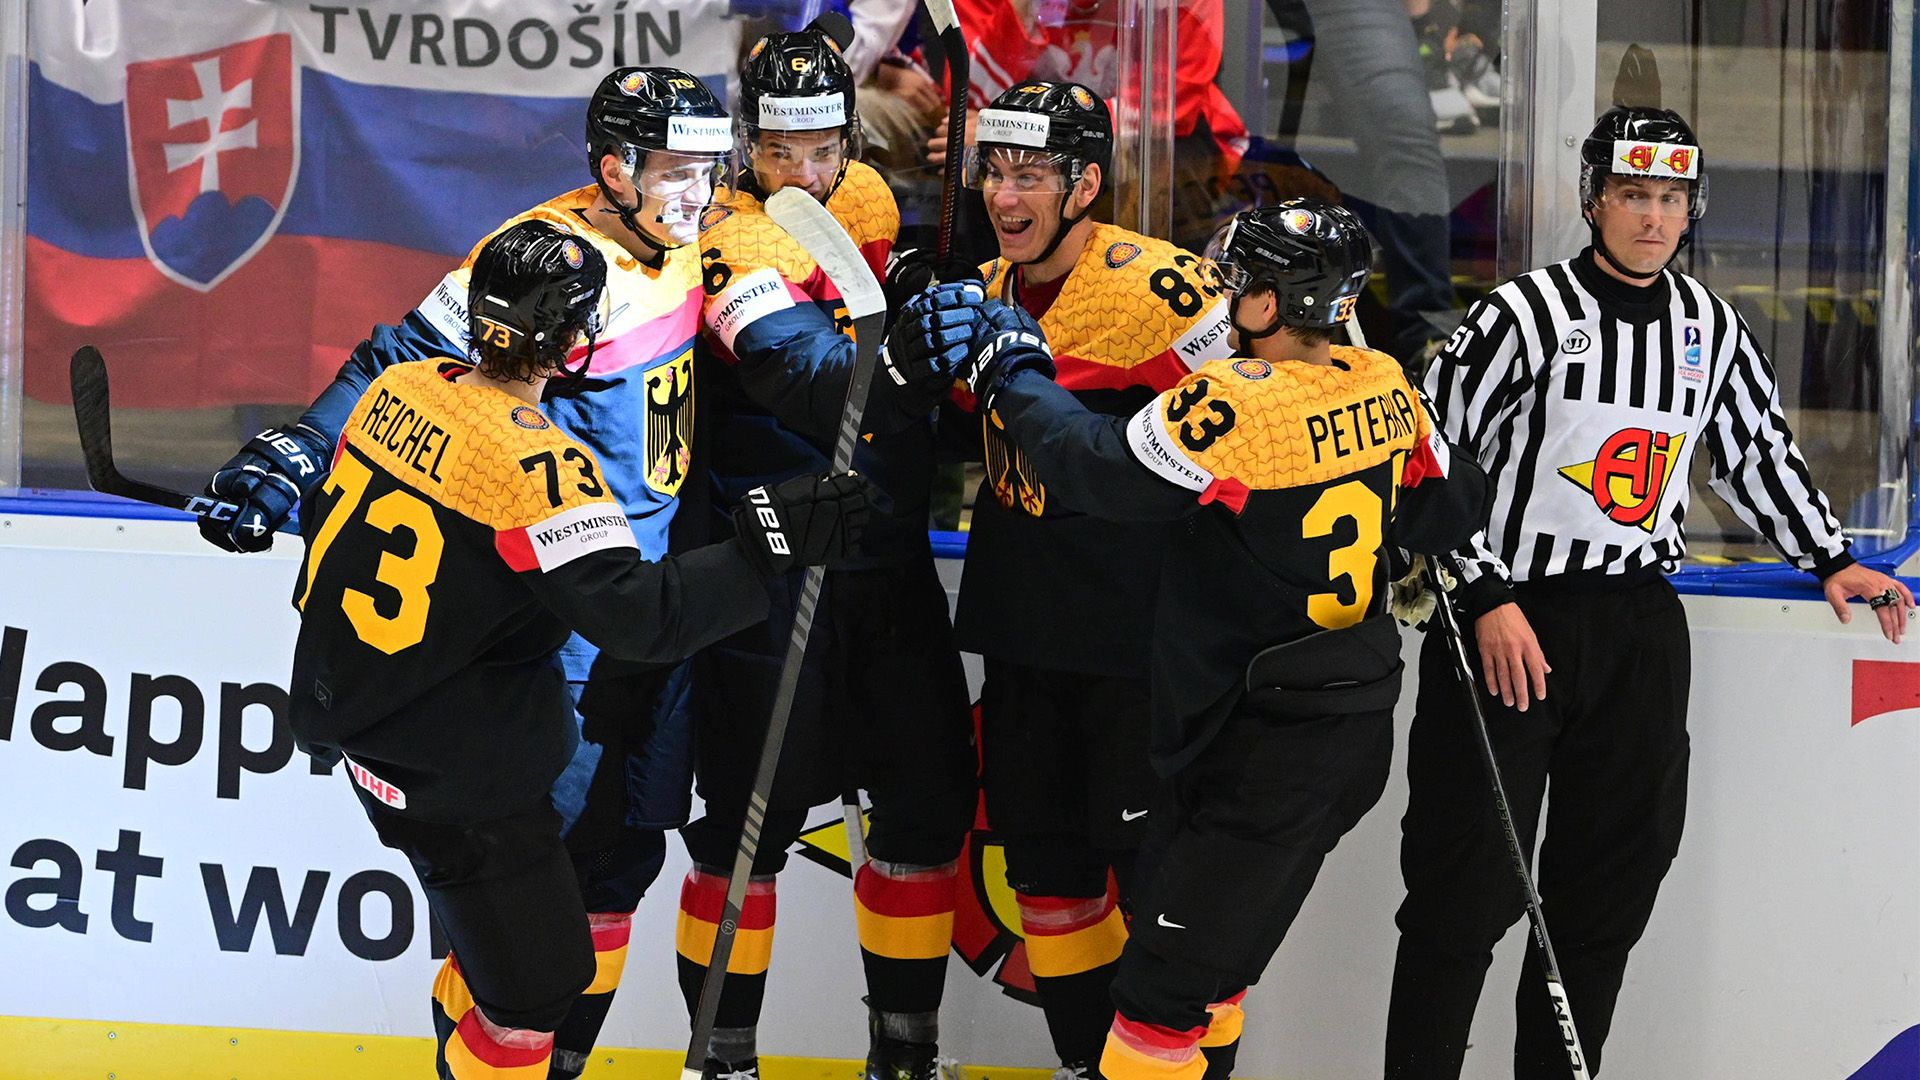 Die deutsche Eishockey-Nationalmannschaft bejubelt einen Treffer bei der Eishockey-WM.